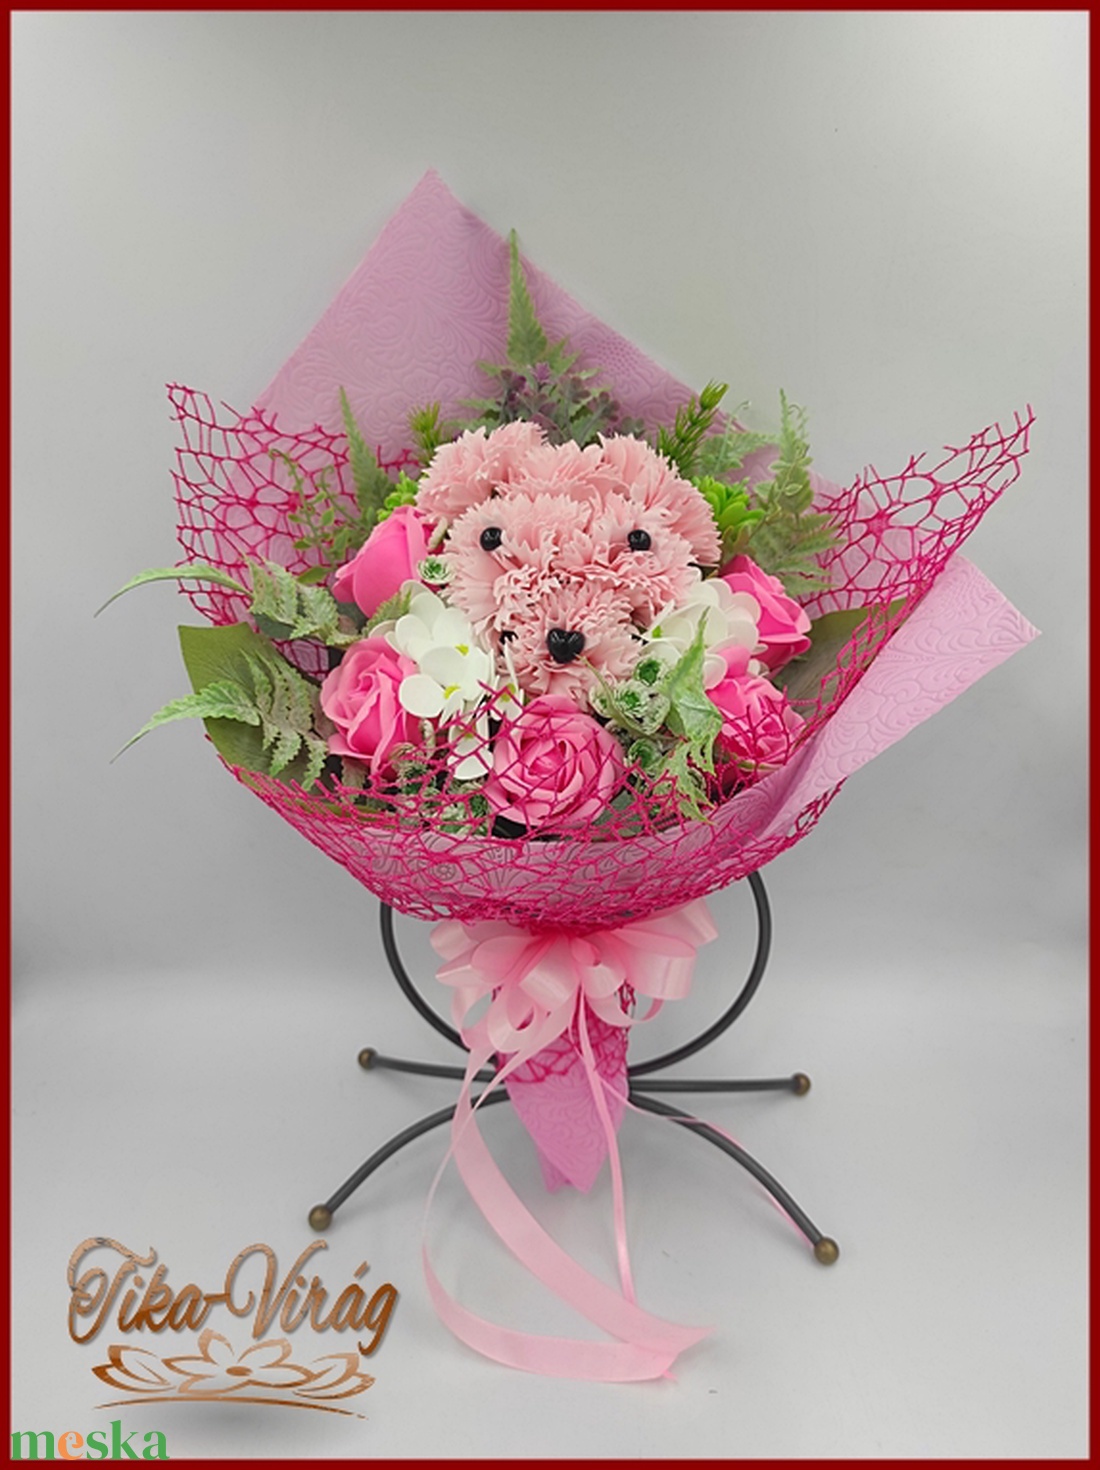 Kutyus illatos szappan-virág csokorba kötve rózsaszín színű - otthon & lakás - dekoráció - virágdísz és tartó - csokor & virágdísz - Meska.hu